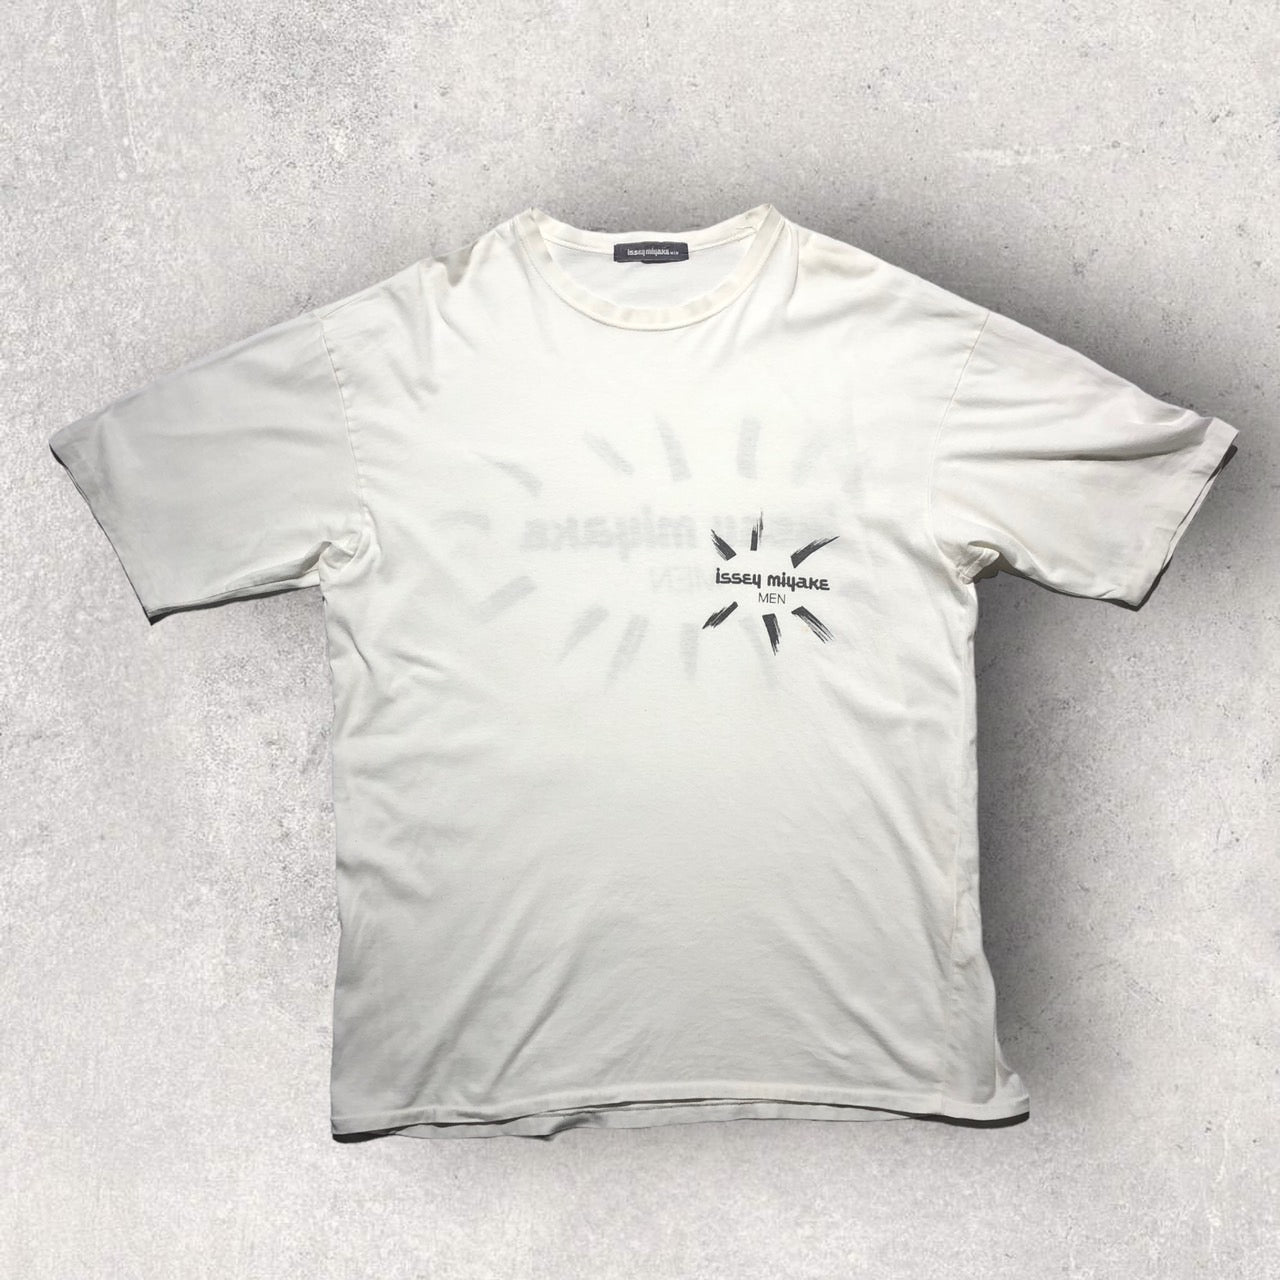 ISSEY MIYAKE MEN(イッセイミヤケメン) 80's vintage logo T-shirt 